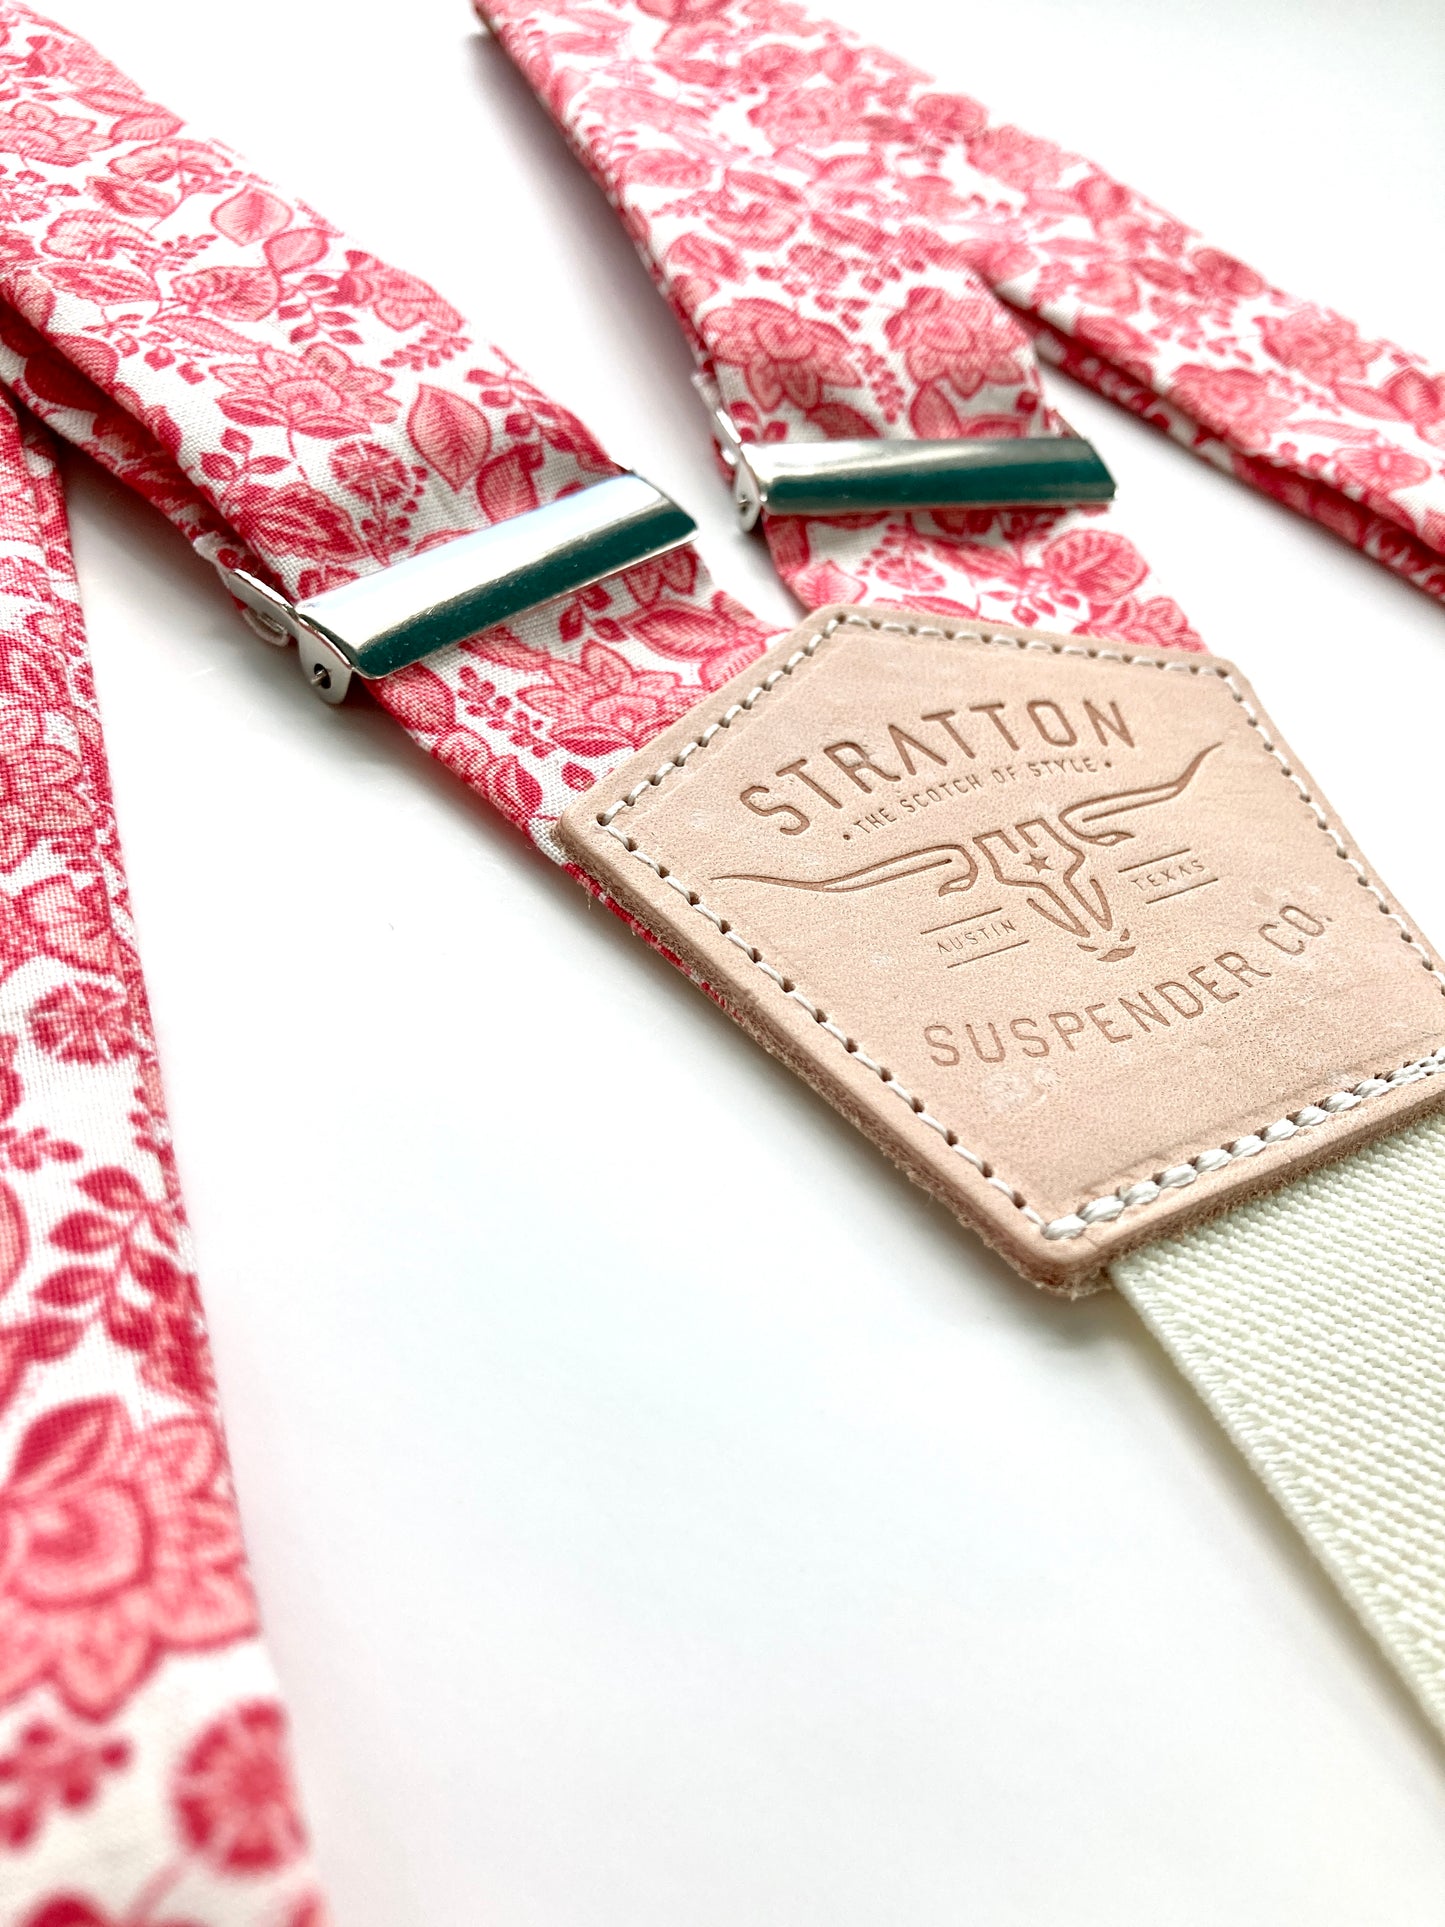 Stratton Suspender Co. Button On Set in Red Vintage 1880